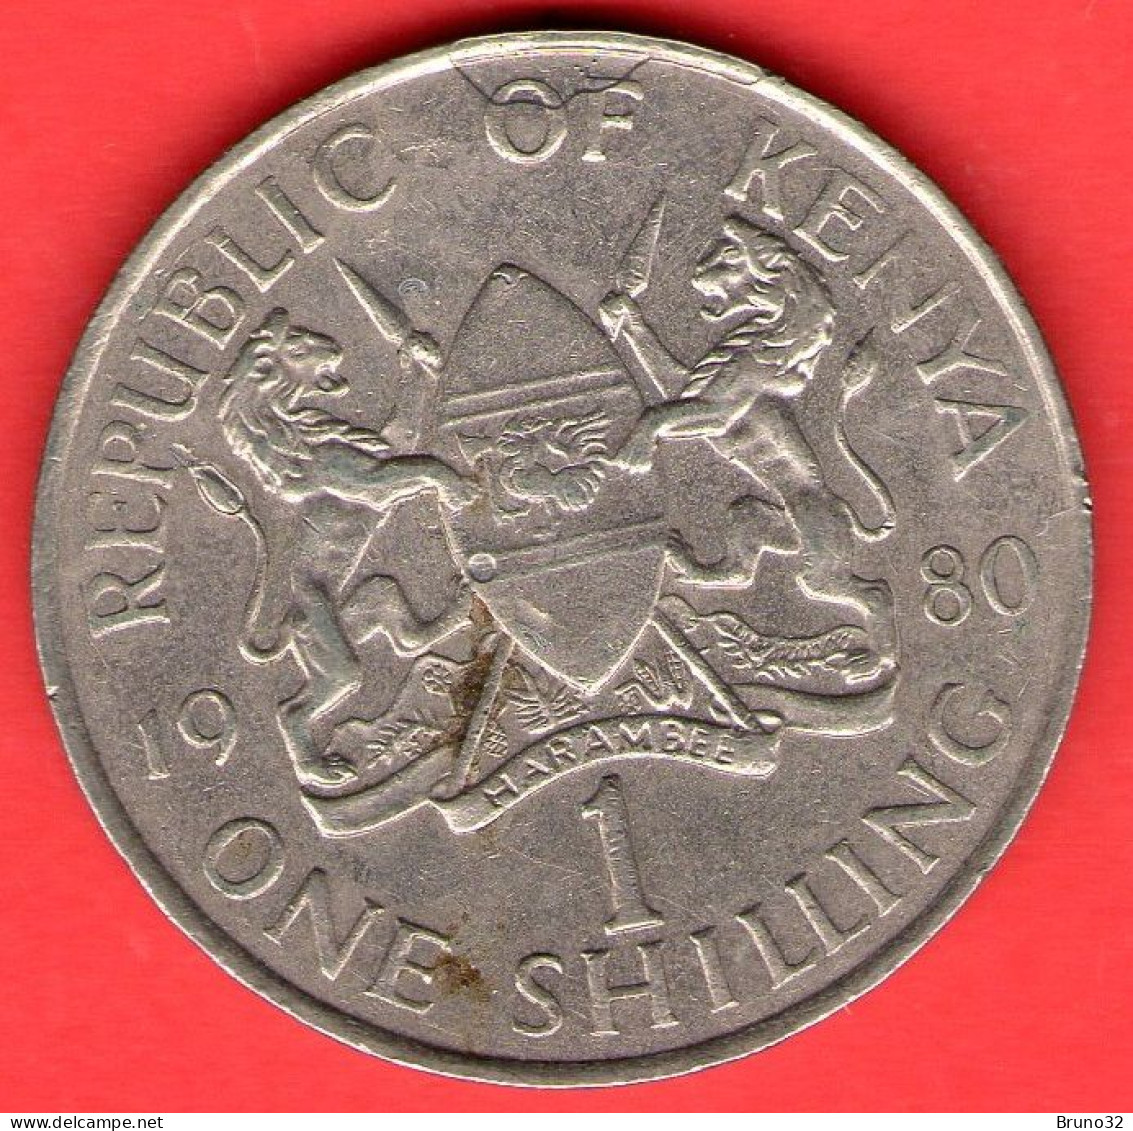 Kenia - Kenya - 1980 - 1 Shilling - SPL/XF - Come Da Foto - Kenya